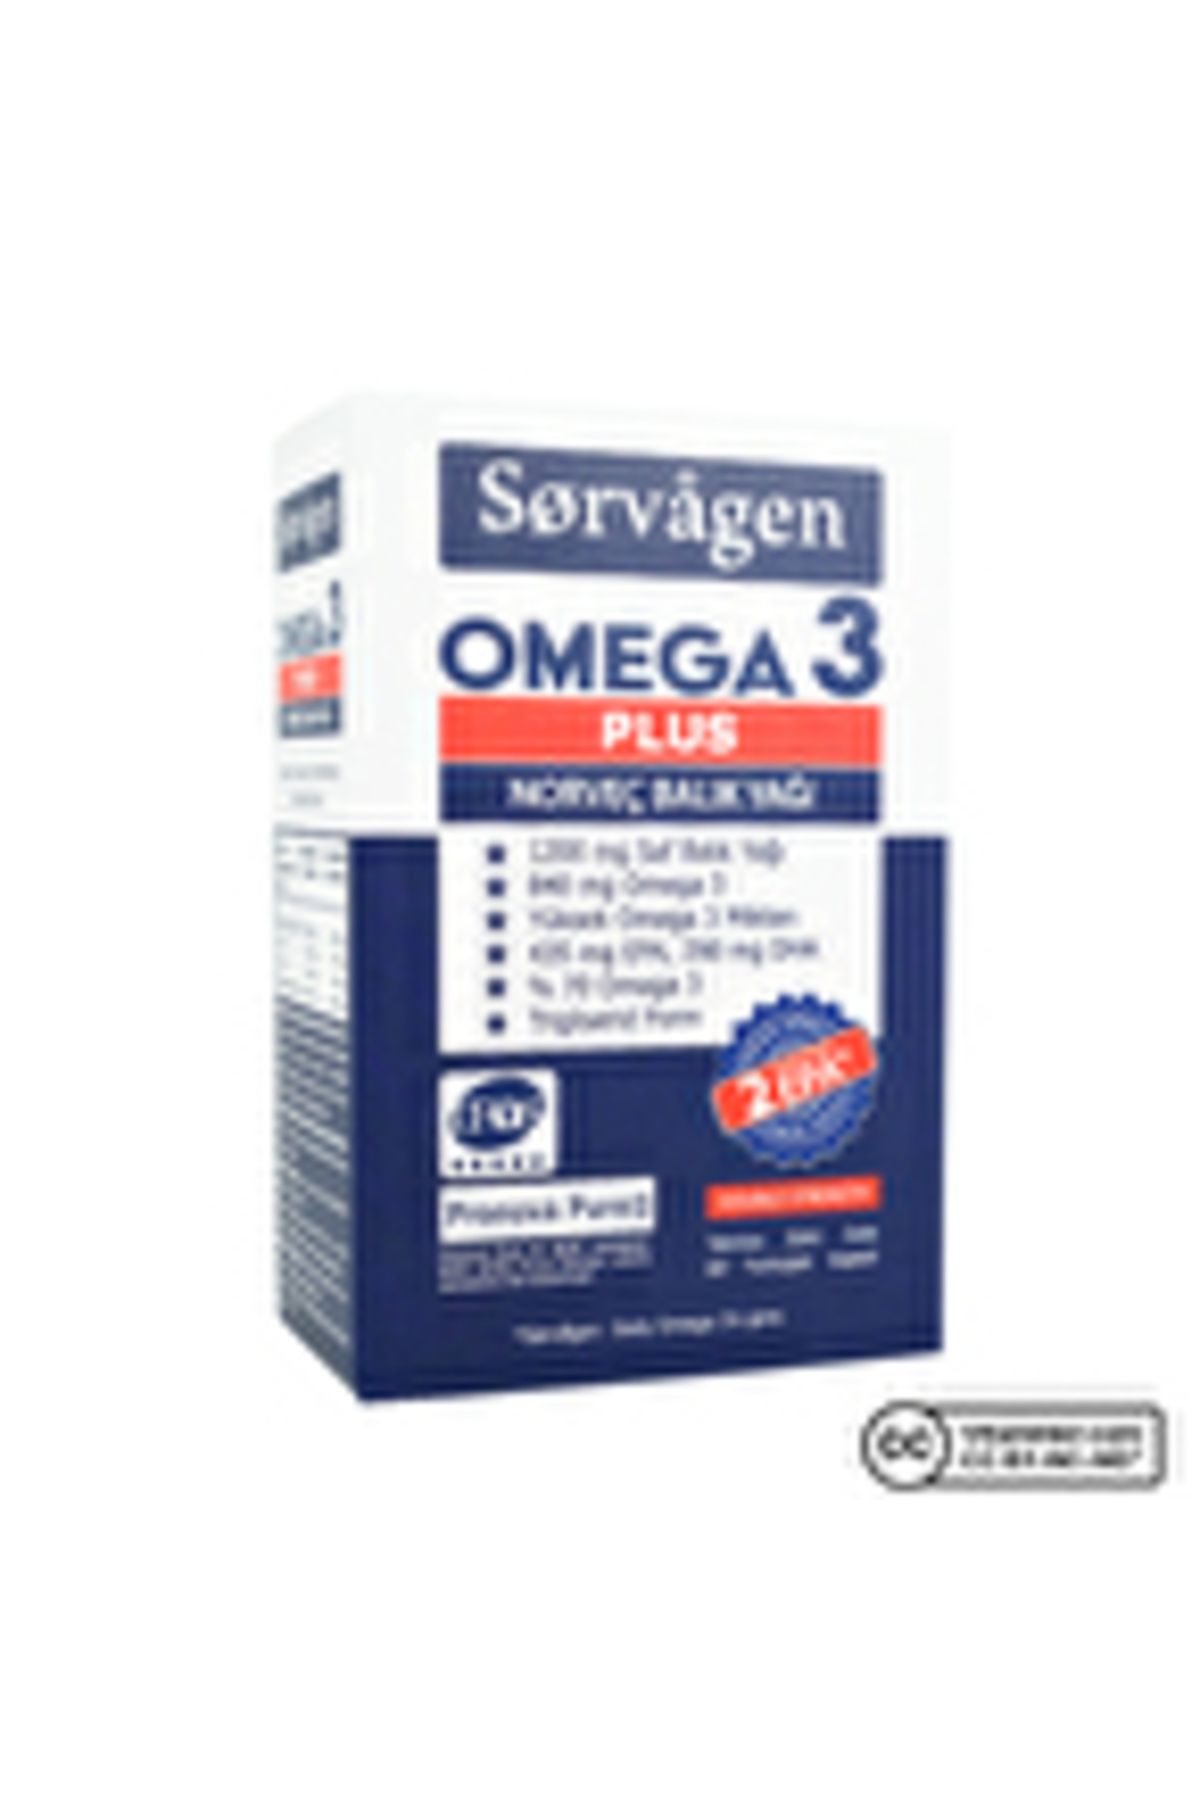 Sorvagen Omega 3 Plus 1200 Mg Balık Yağı 60 Kapsül ( 1 ADET )